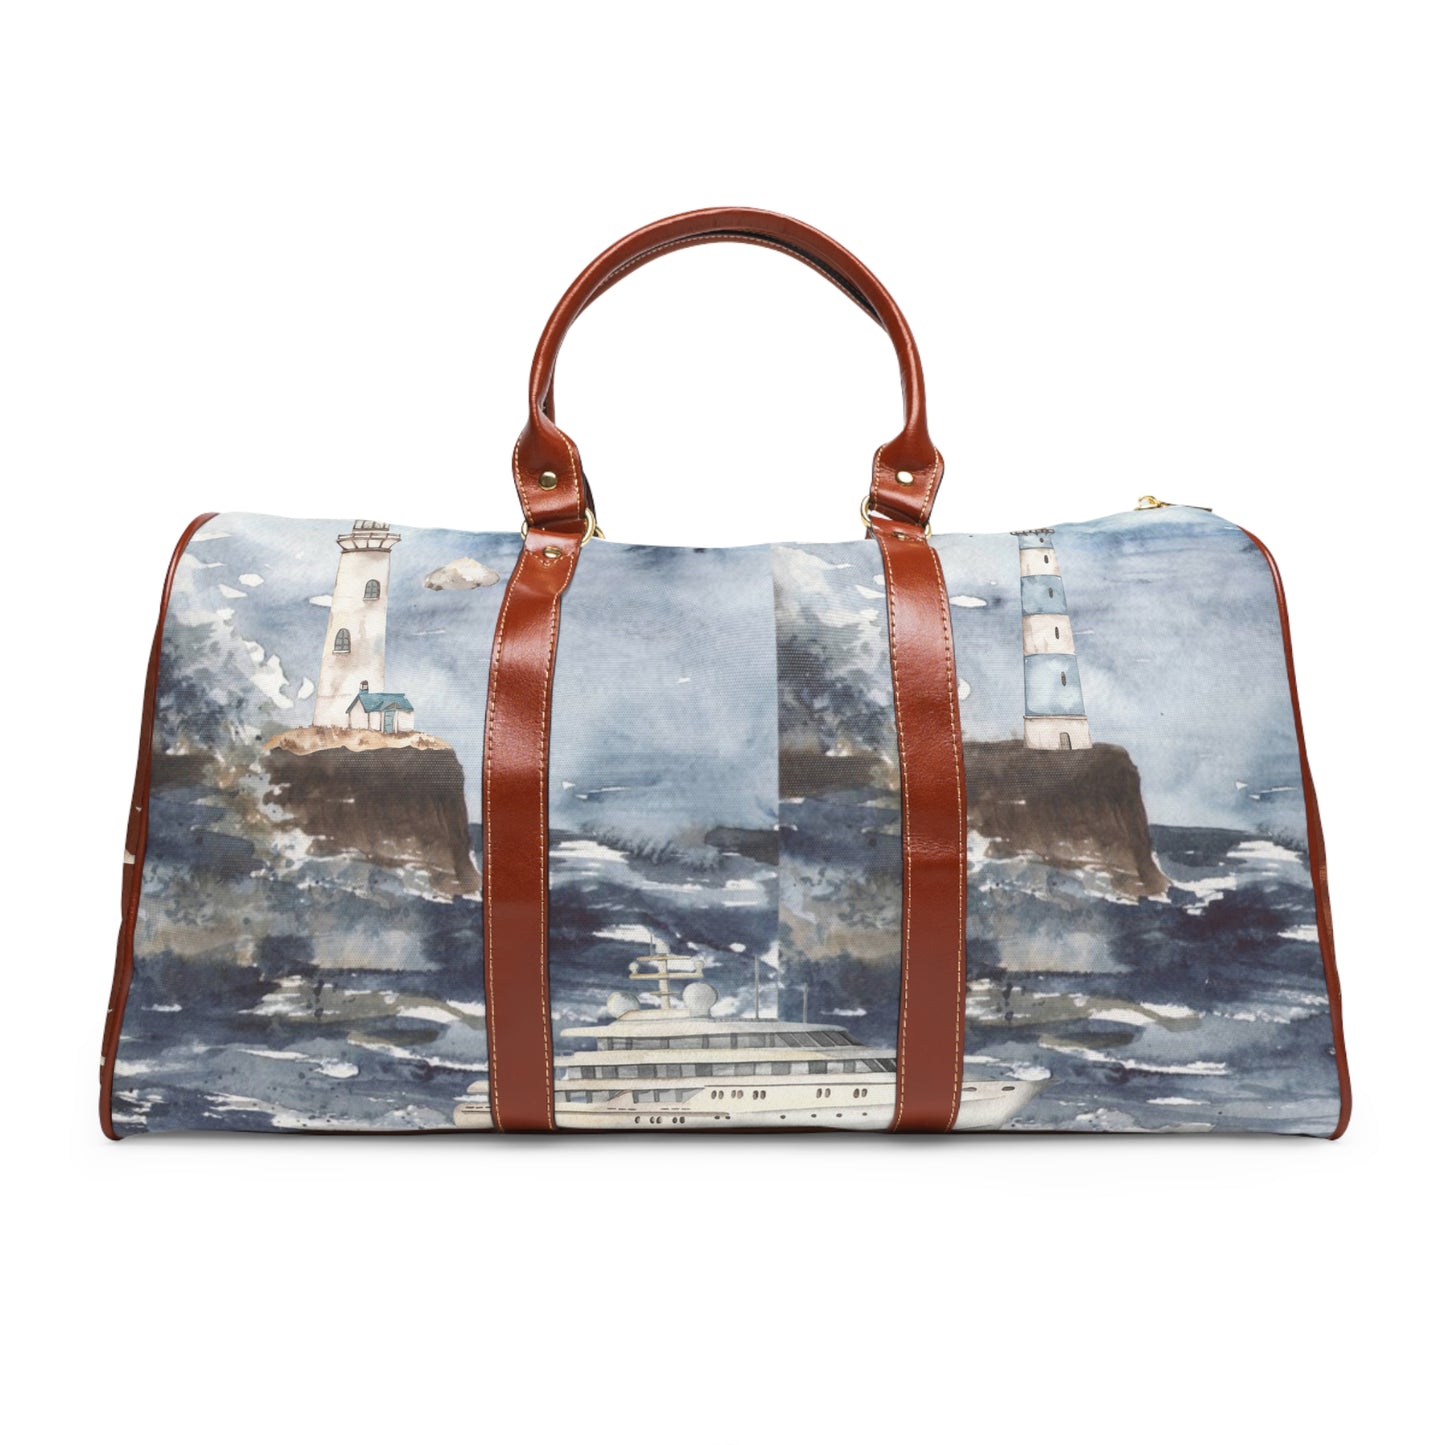 Sea & waves -Waterproof Travel Bag